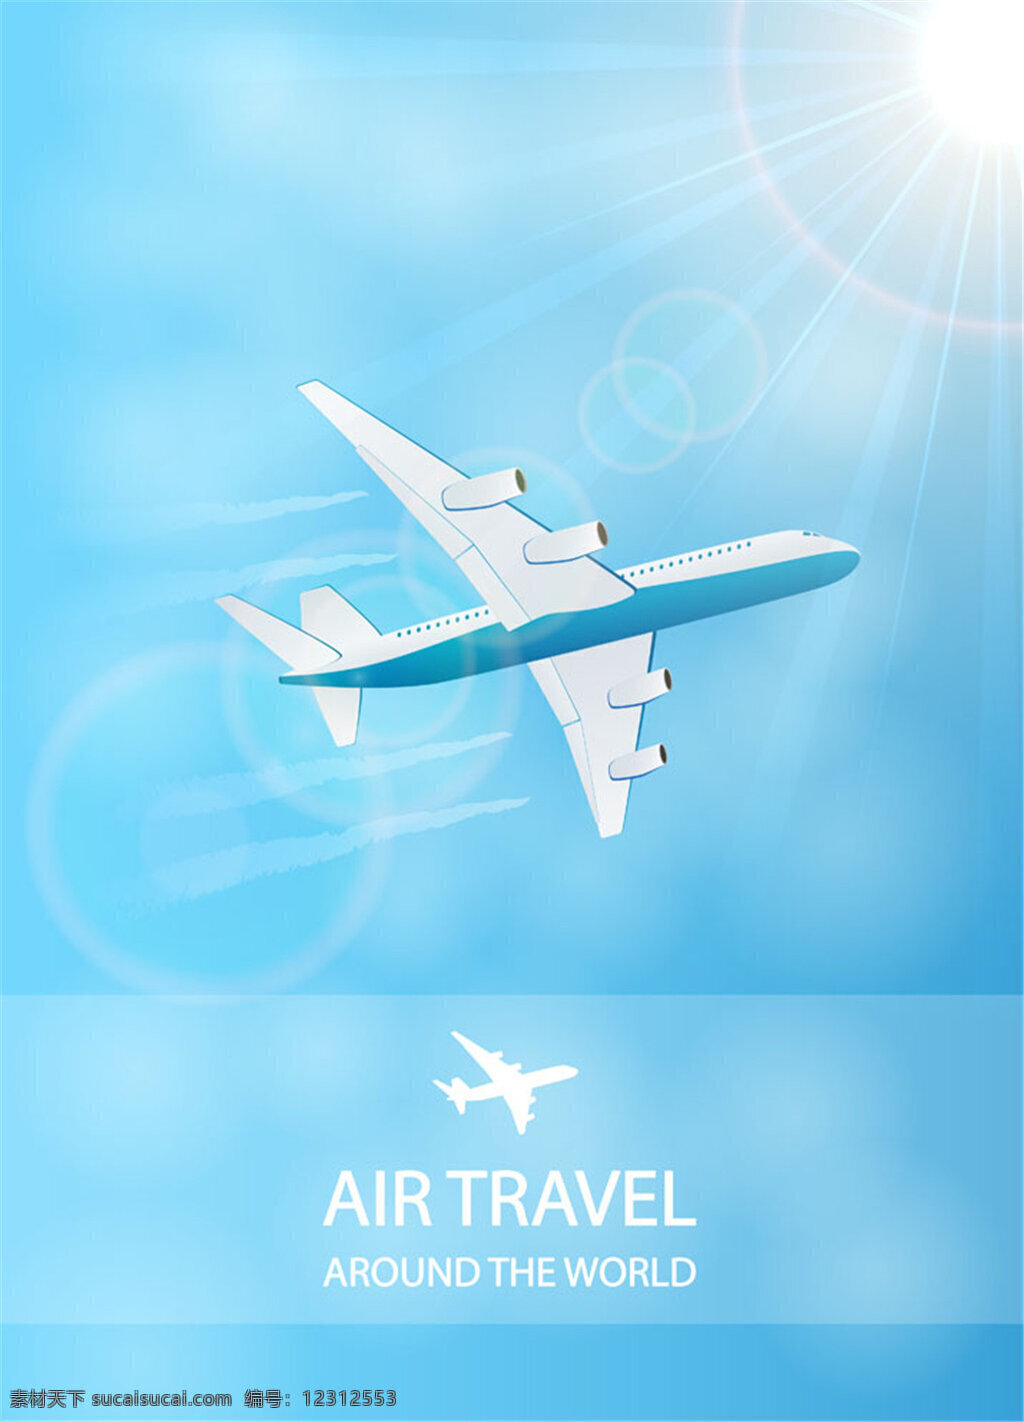 创意 飞机 旅行 设计素材 海报 光晕 蓝天 阳光 卡通 宣传 杂志 交通工具 现代科技 矢量素材